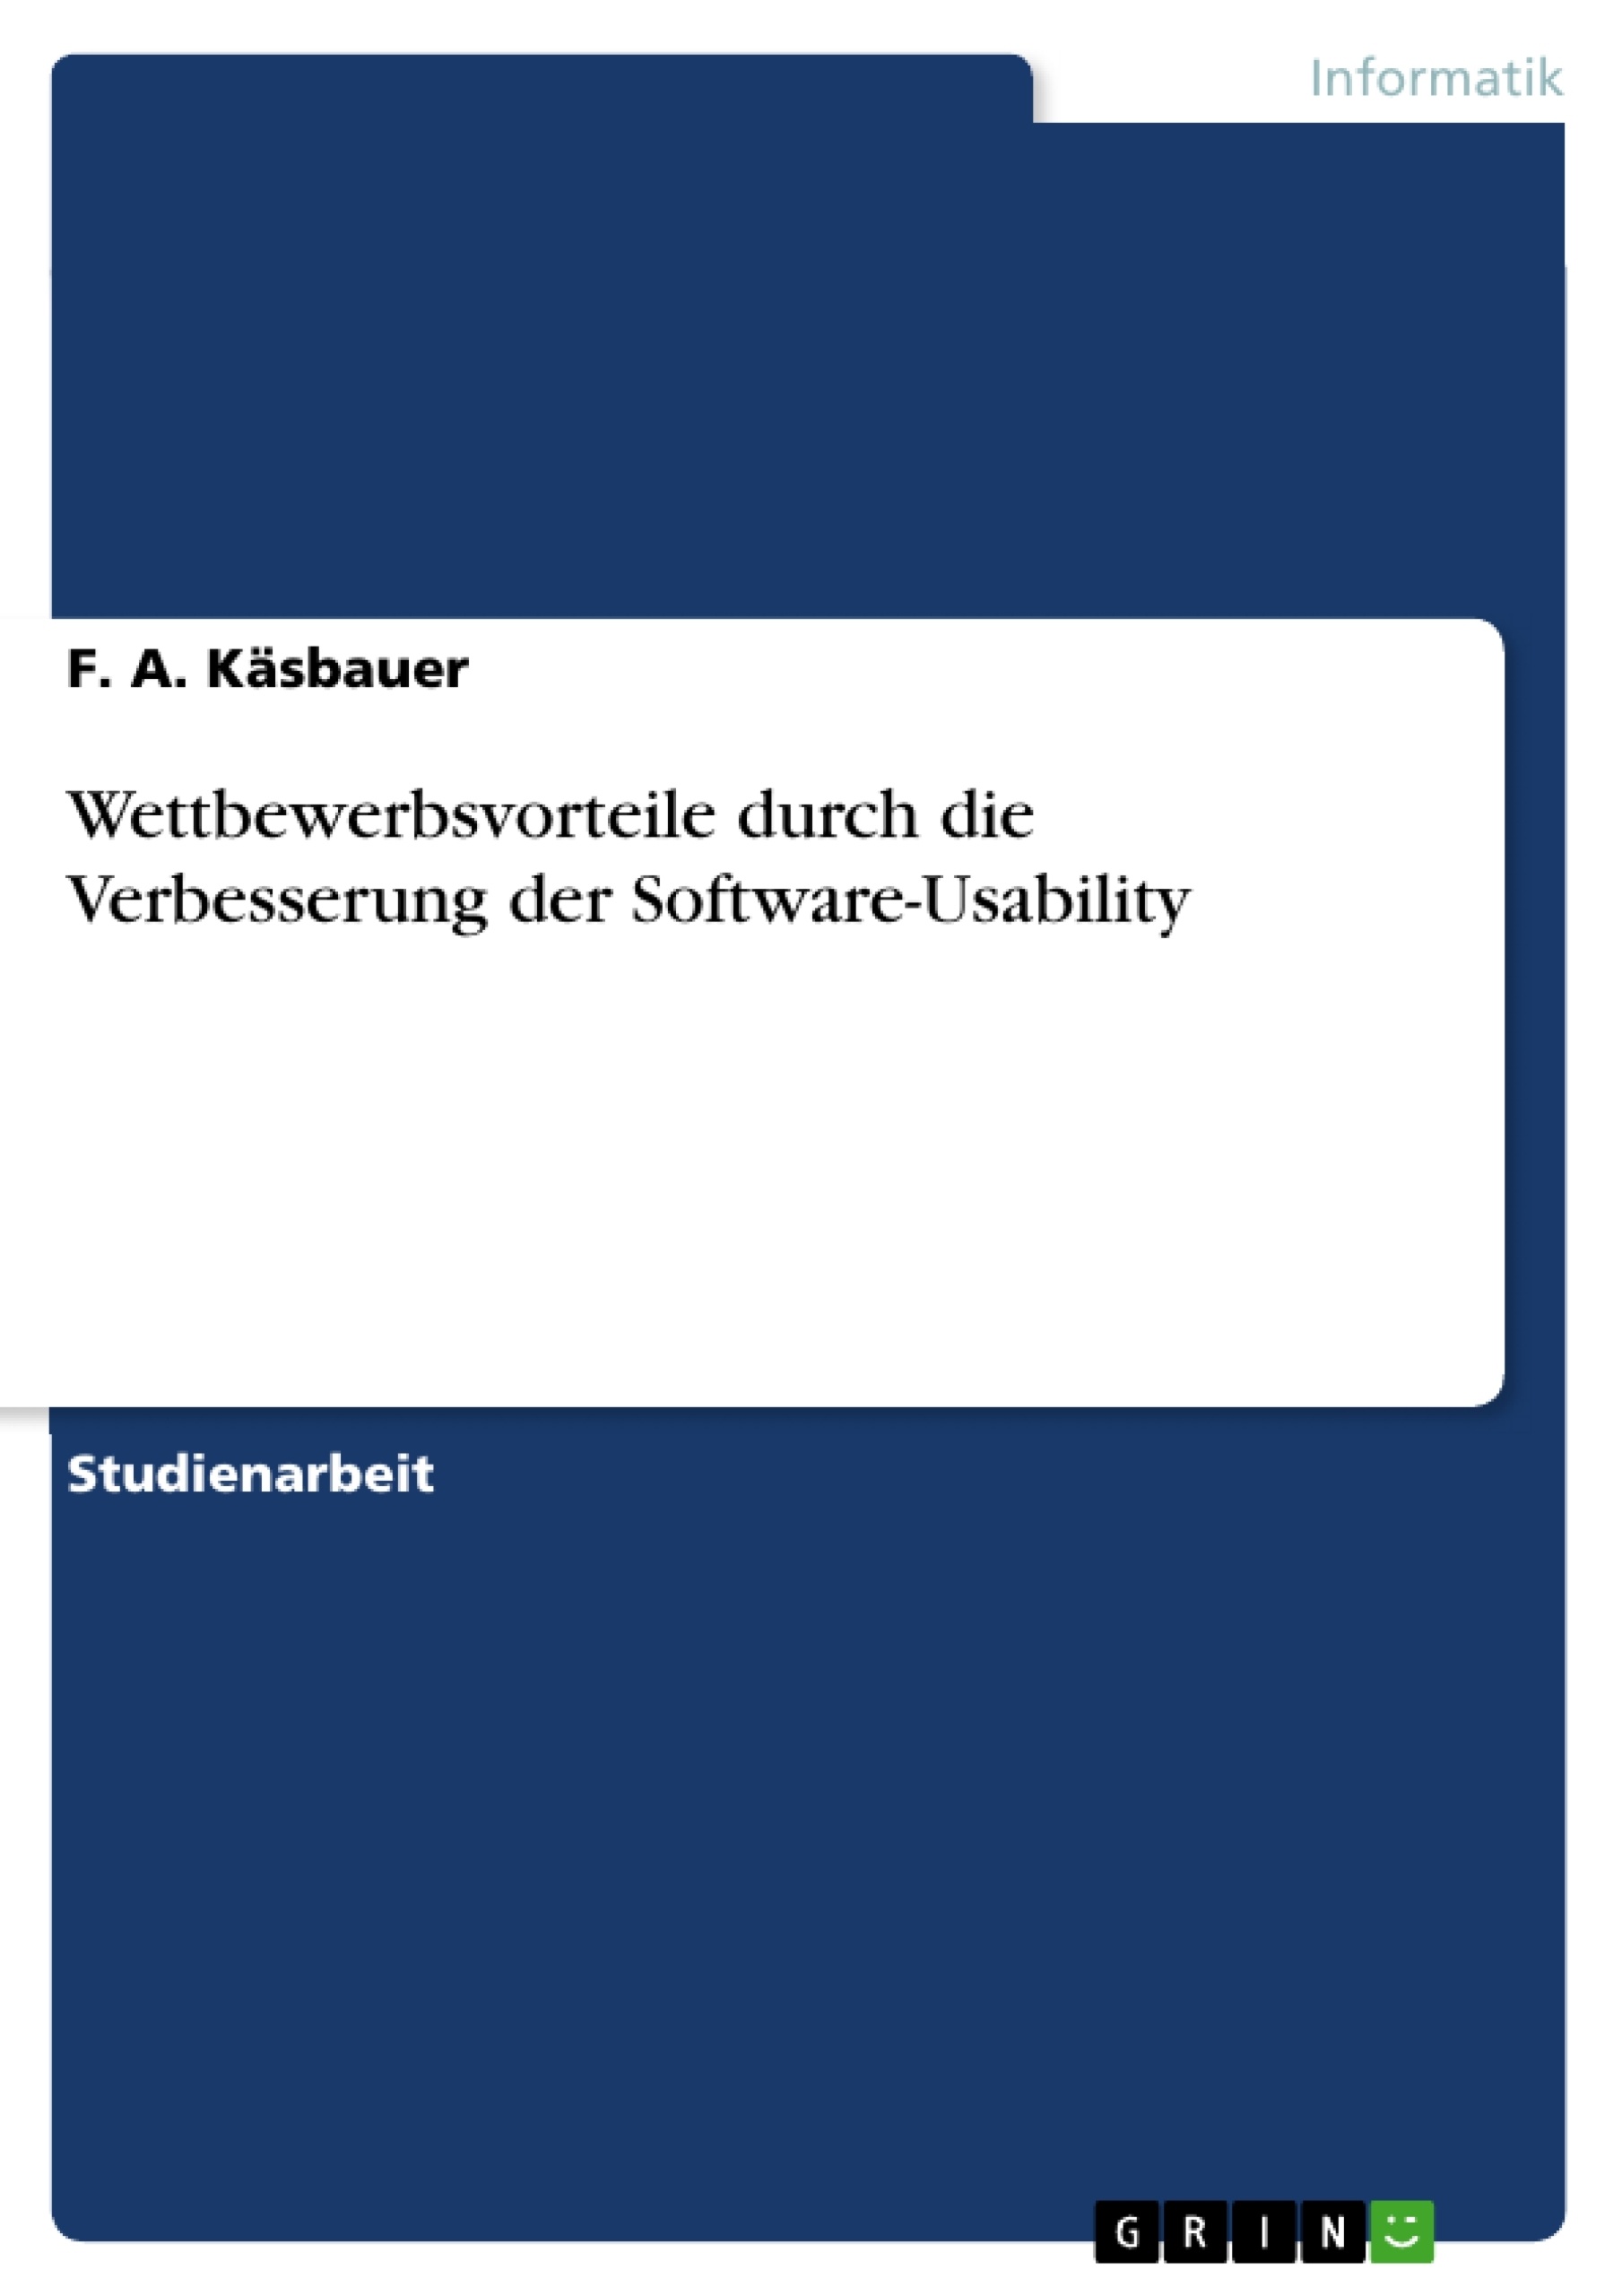 Title: Wettbewerbsvorteile durch die Verbesserung der Software-Usability